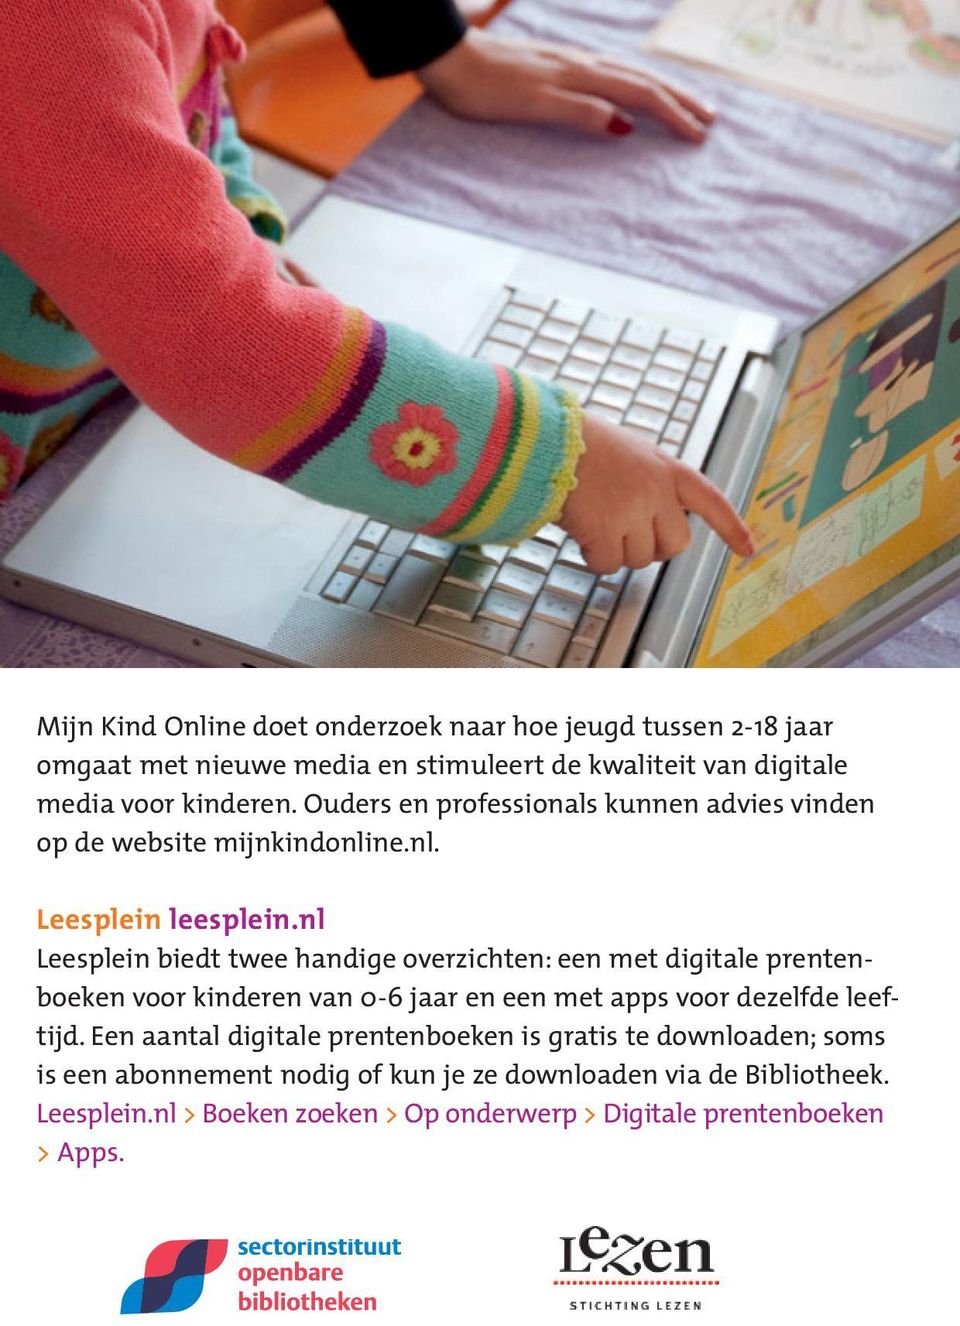 nl Leesplein biedt twee handige overzichten: een met digitale prentenboeken voor kinderen van 0-6 jaar en een met apps voor dezelfde leeftijd.